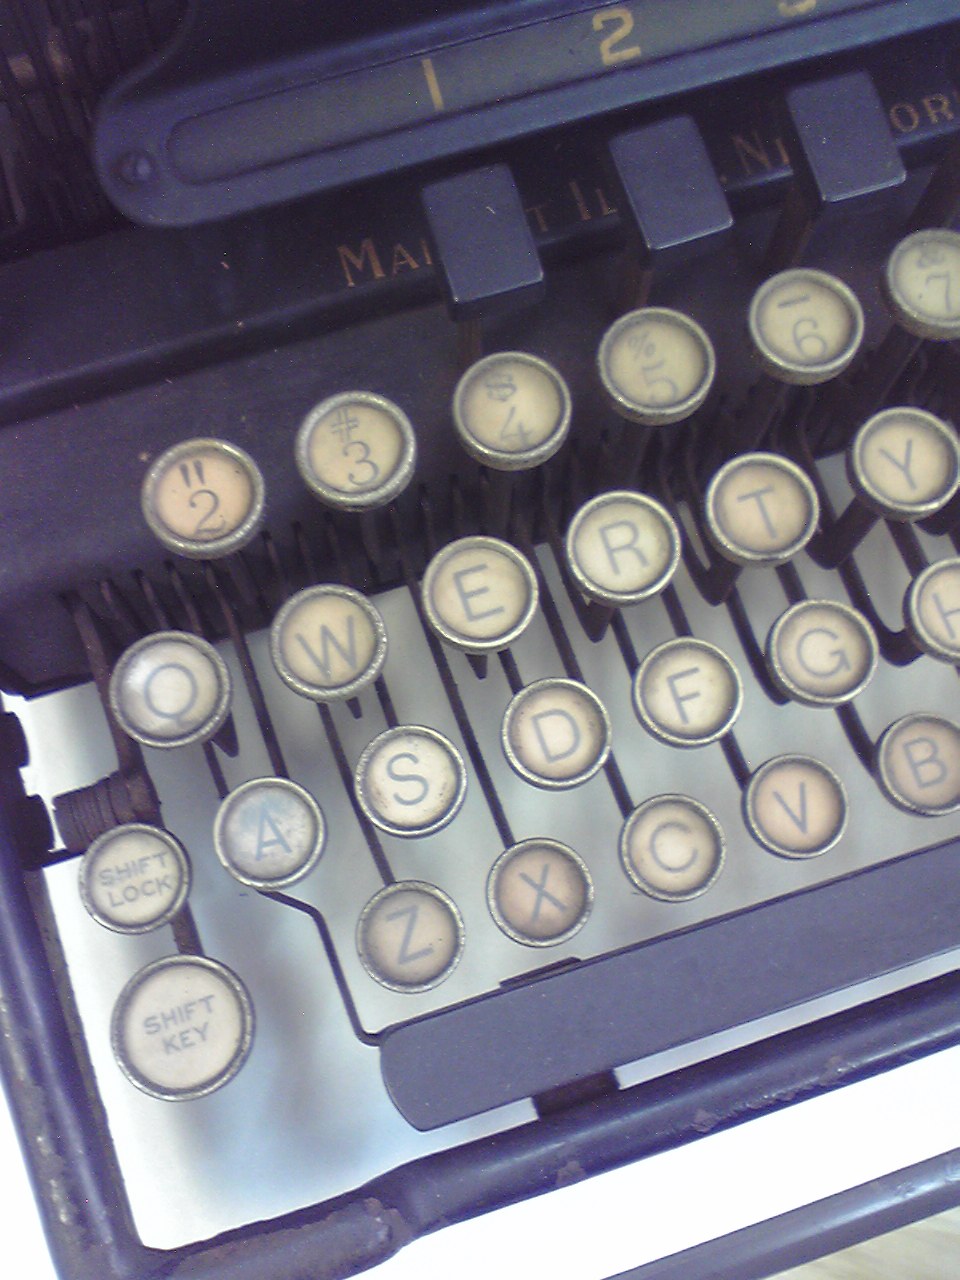 伊藤事務機の「Remington Standard Typewriter No.10」のキーボード左半分